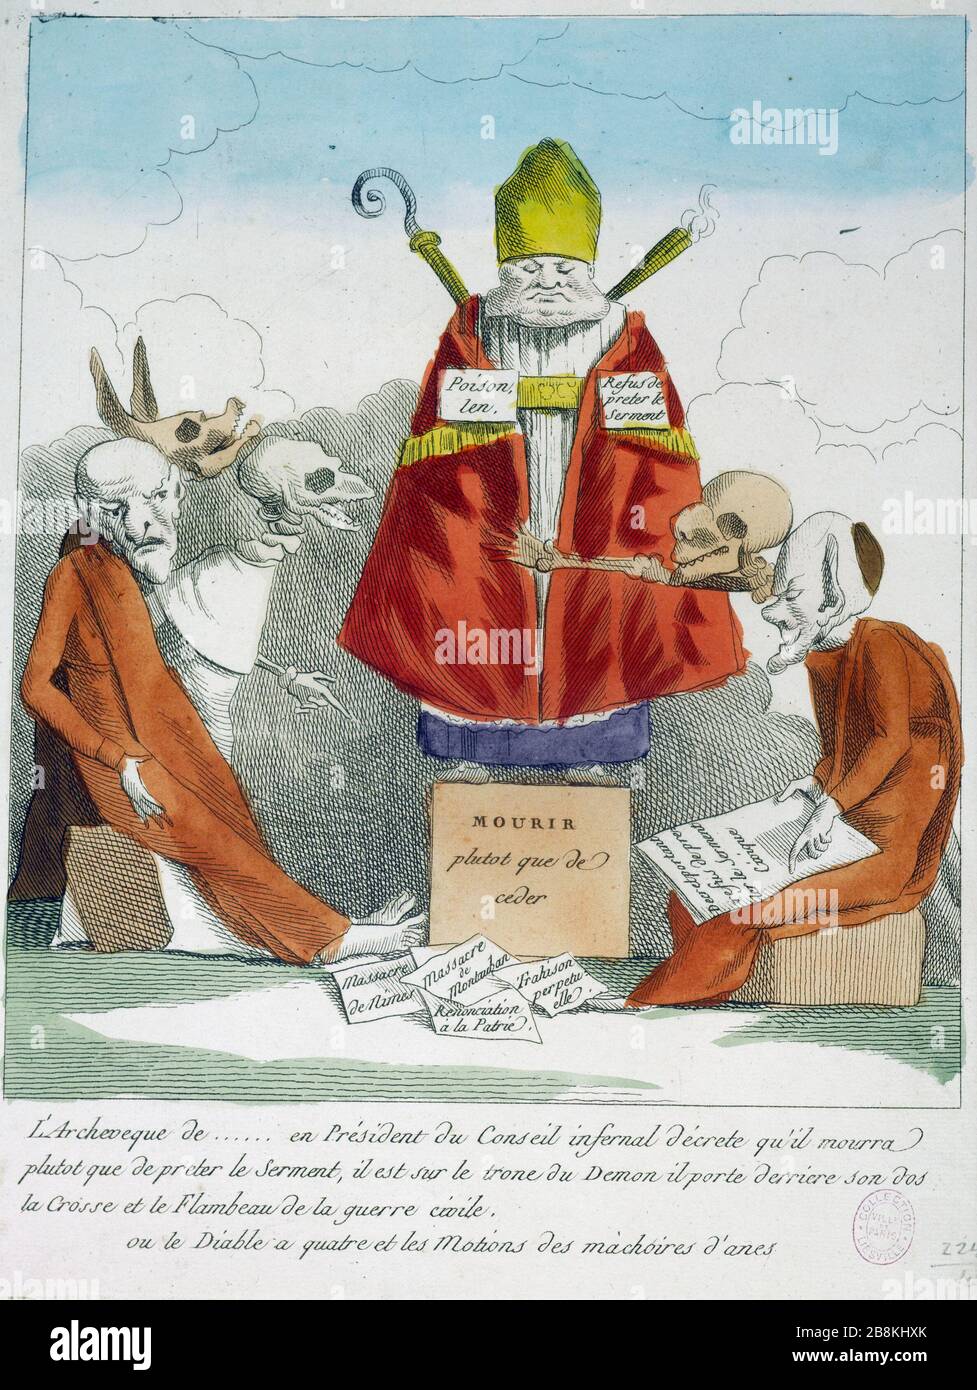 ARCHBISHOP OF ... IN COUNCIL PRESIDENT INFERNAL DECREES THAT DIE RATHER THAN PAY THE OATH 'L'Archevêque de... en Président du conseil infernal décrète qu'il mourra plutôt que de prêter le Serment...(1791-1792)'. Estampe. Paris, musée Carnavalet. Stock Photo